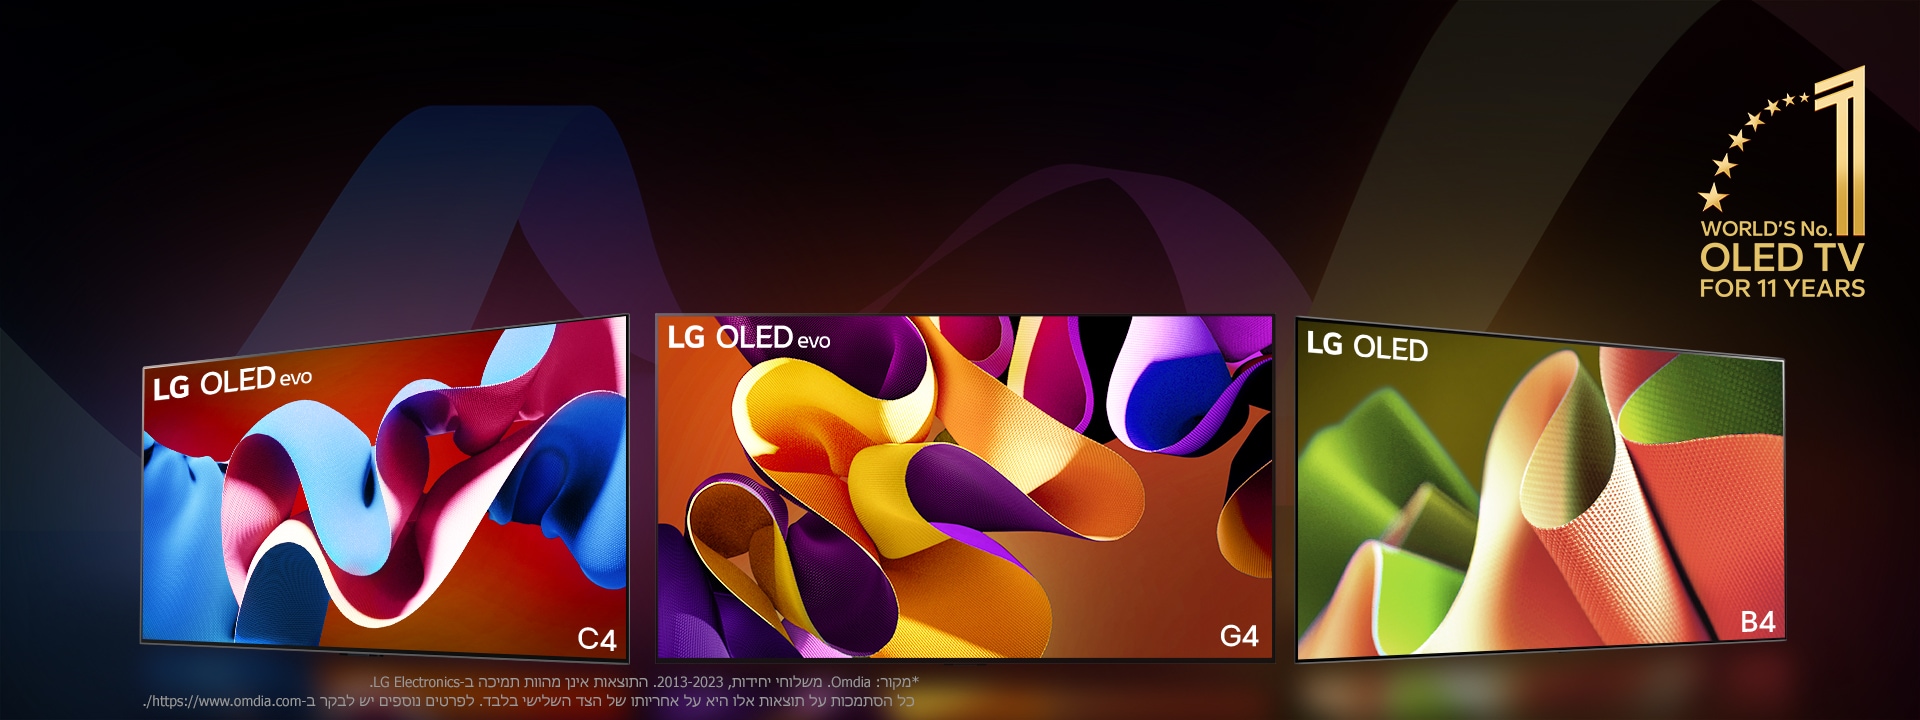 טלוויזיות C4‏ LG OLED evo, ‏evo G4 ו-B4 עומדות בשורה על רקע שחור עם מערבולות צבע עדינות. הסמל של "OLED TV מספר 1 במשך 11 שנים ברציפות" מופיע בתמונה.  מוצג כתב ויתור: "מקור: Omdia. משלוחי יחידות, 2013 עד 2023. התוצאות אינן מהוות תמיכה ב-LG Electronics. כל הסתמכות על תוצאות אלו היא על אחריותו של הצד השלישי בלבד. לפרטים נוספים יש לבקר ב-https://www.omdia.com/."